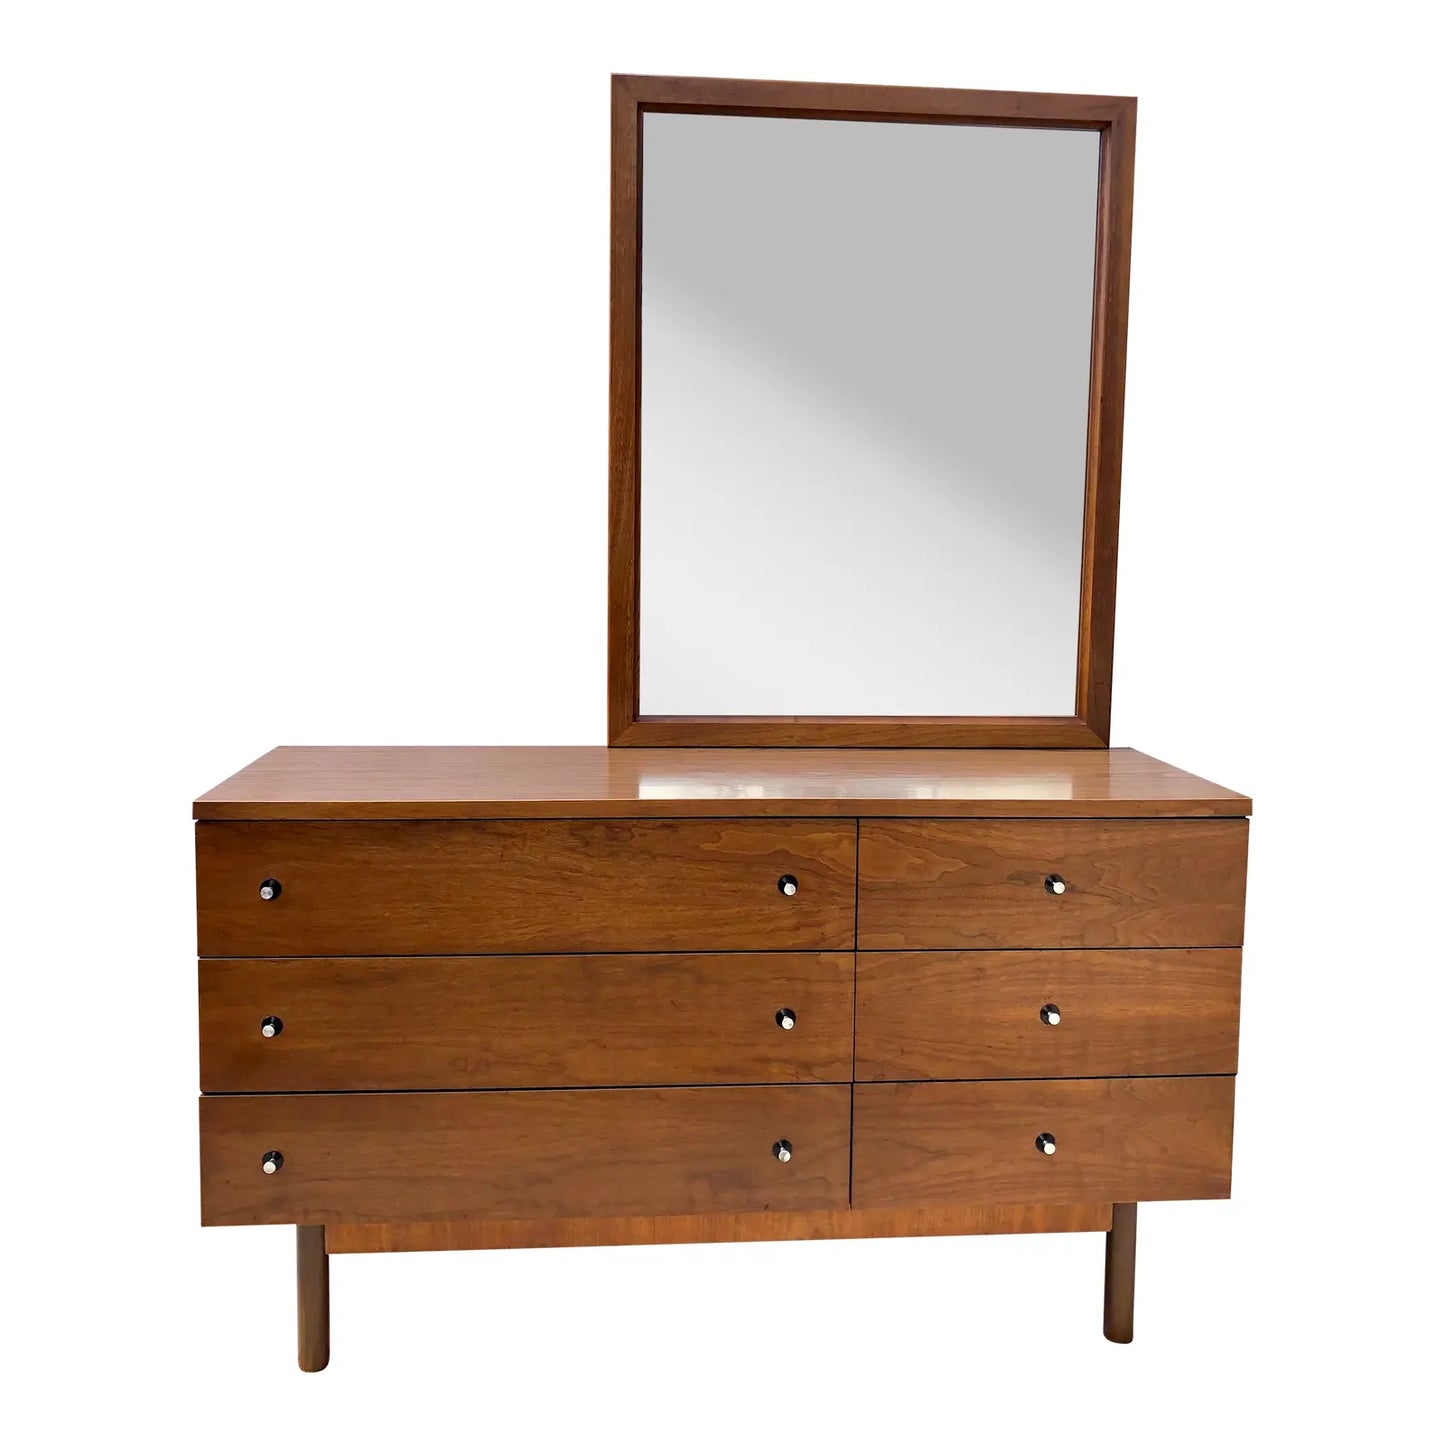 Walnut Mid-Century Modern Dresser and Mirror Set by Stanley Furniture